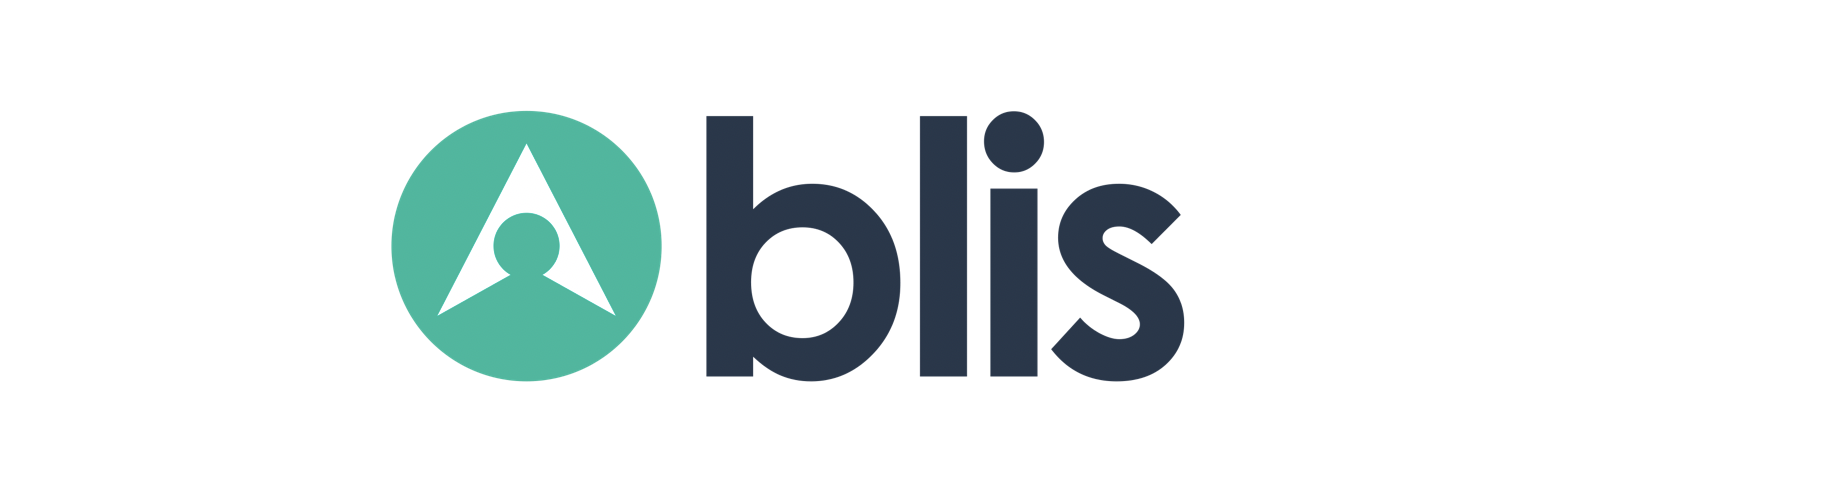 blis-logo